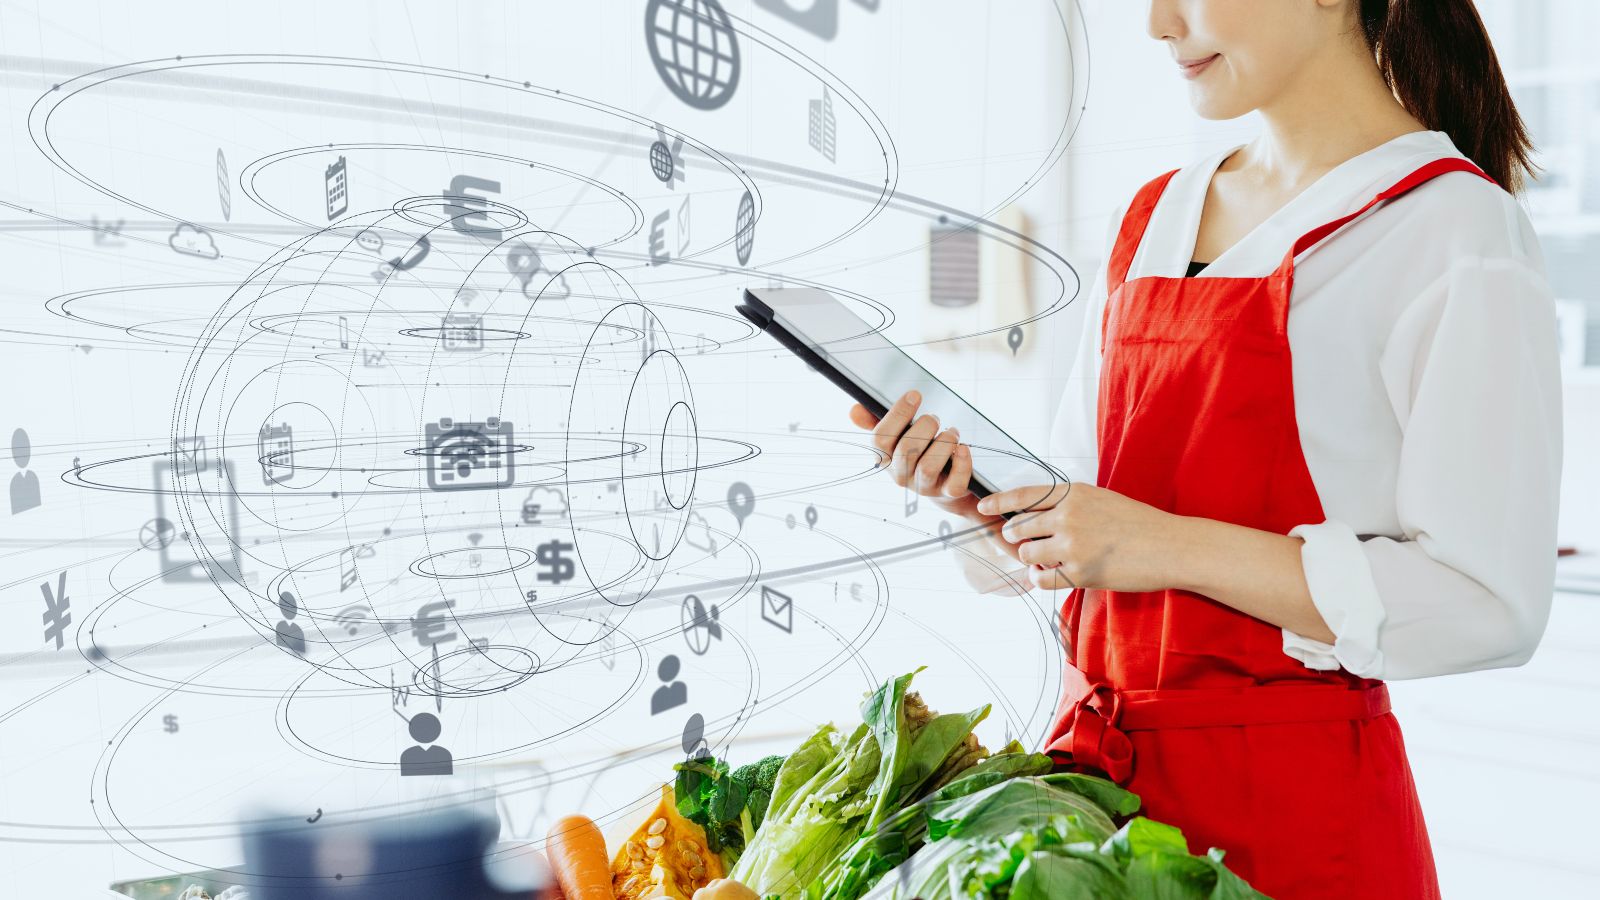 Eine Frau mit einer roten Schürze steht in der Küche und hält ein Tablet. Vor ihr liegt frisches Gemüse. Im Raum schweben diverse illustrierte Piktogramm um eine skizzierte Kugel.